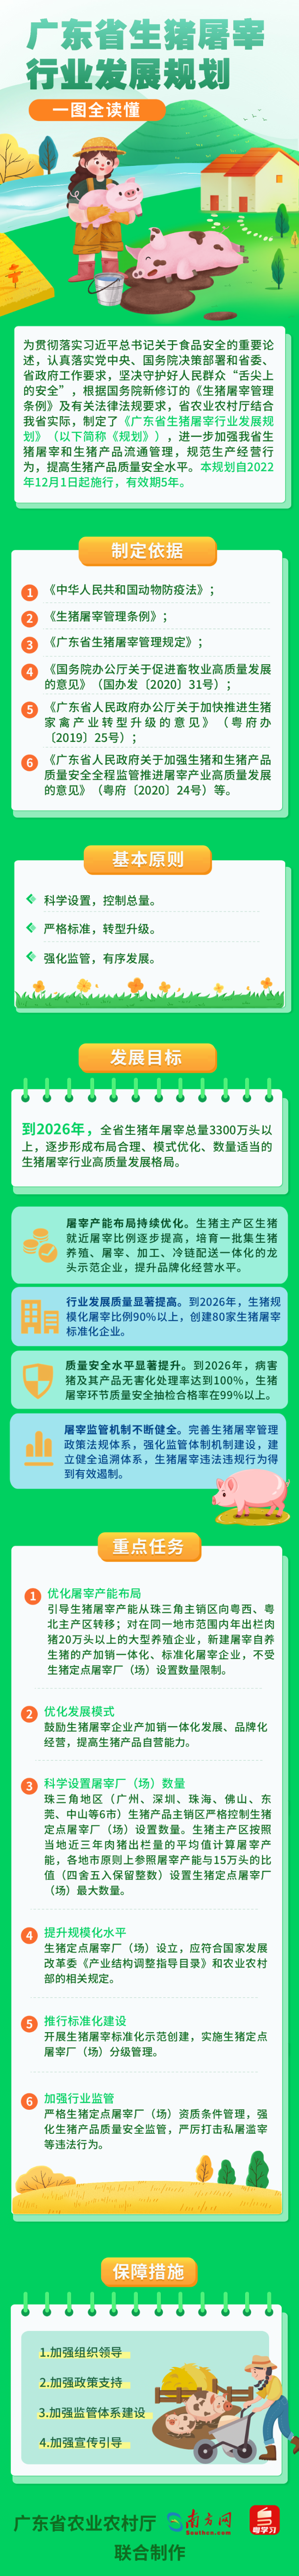 【处室修改版】一图读懂《广东省生猪屠宰行业发展规划》.png